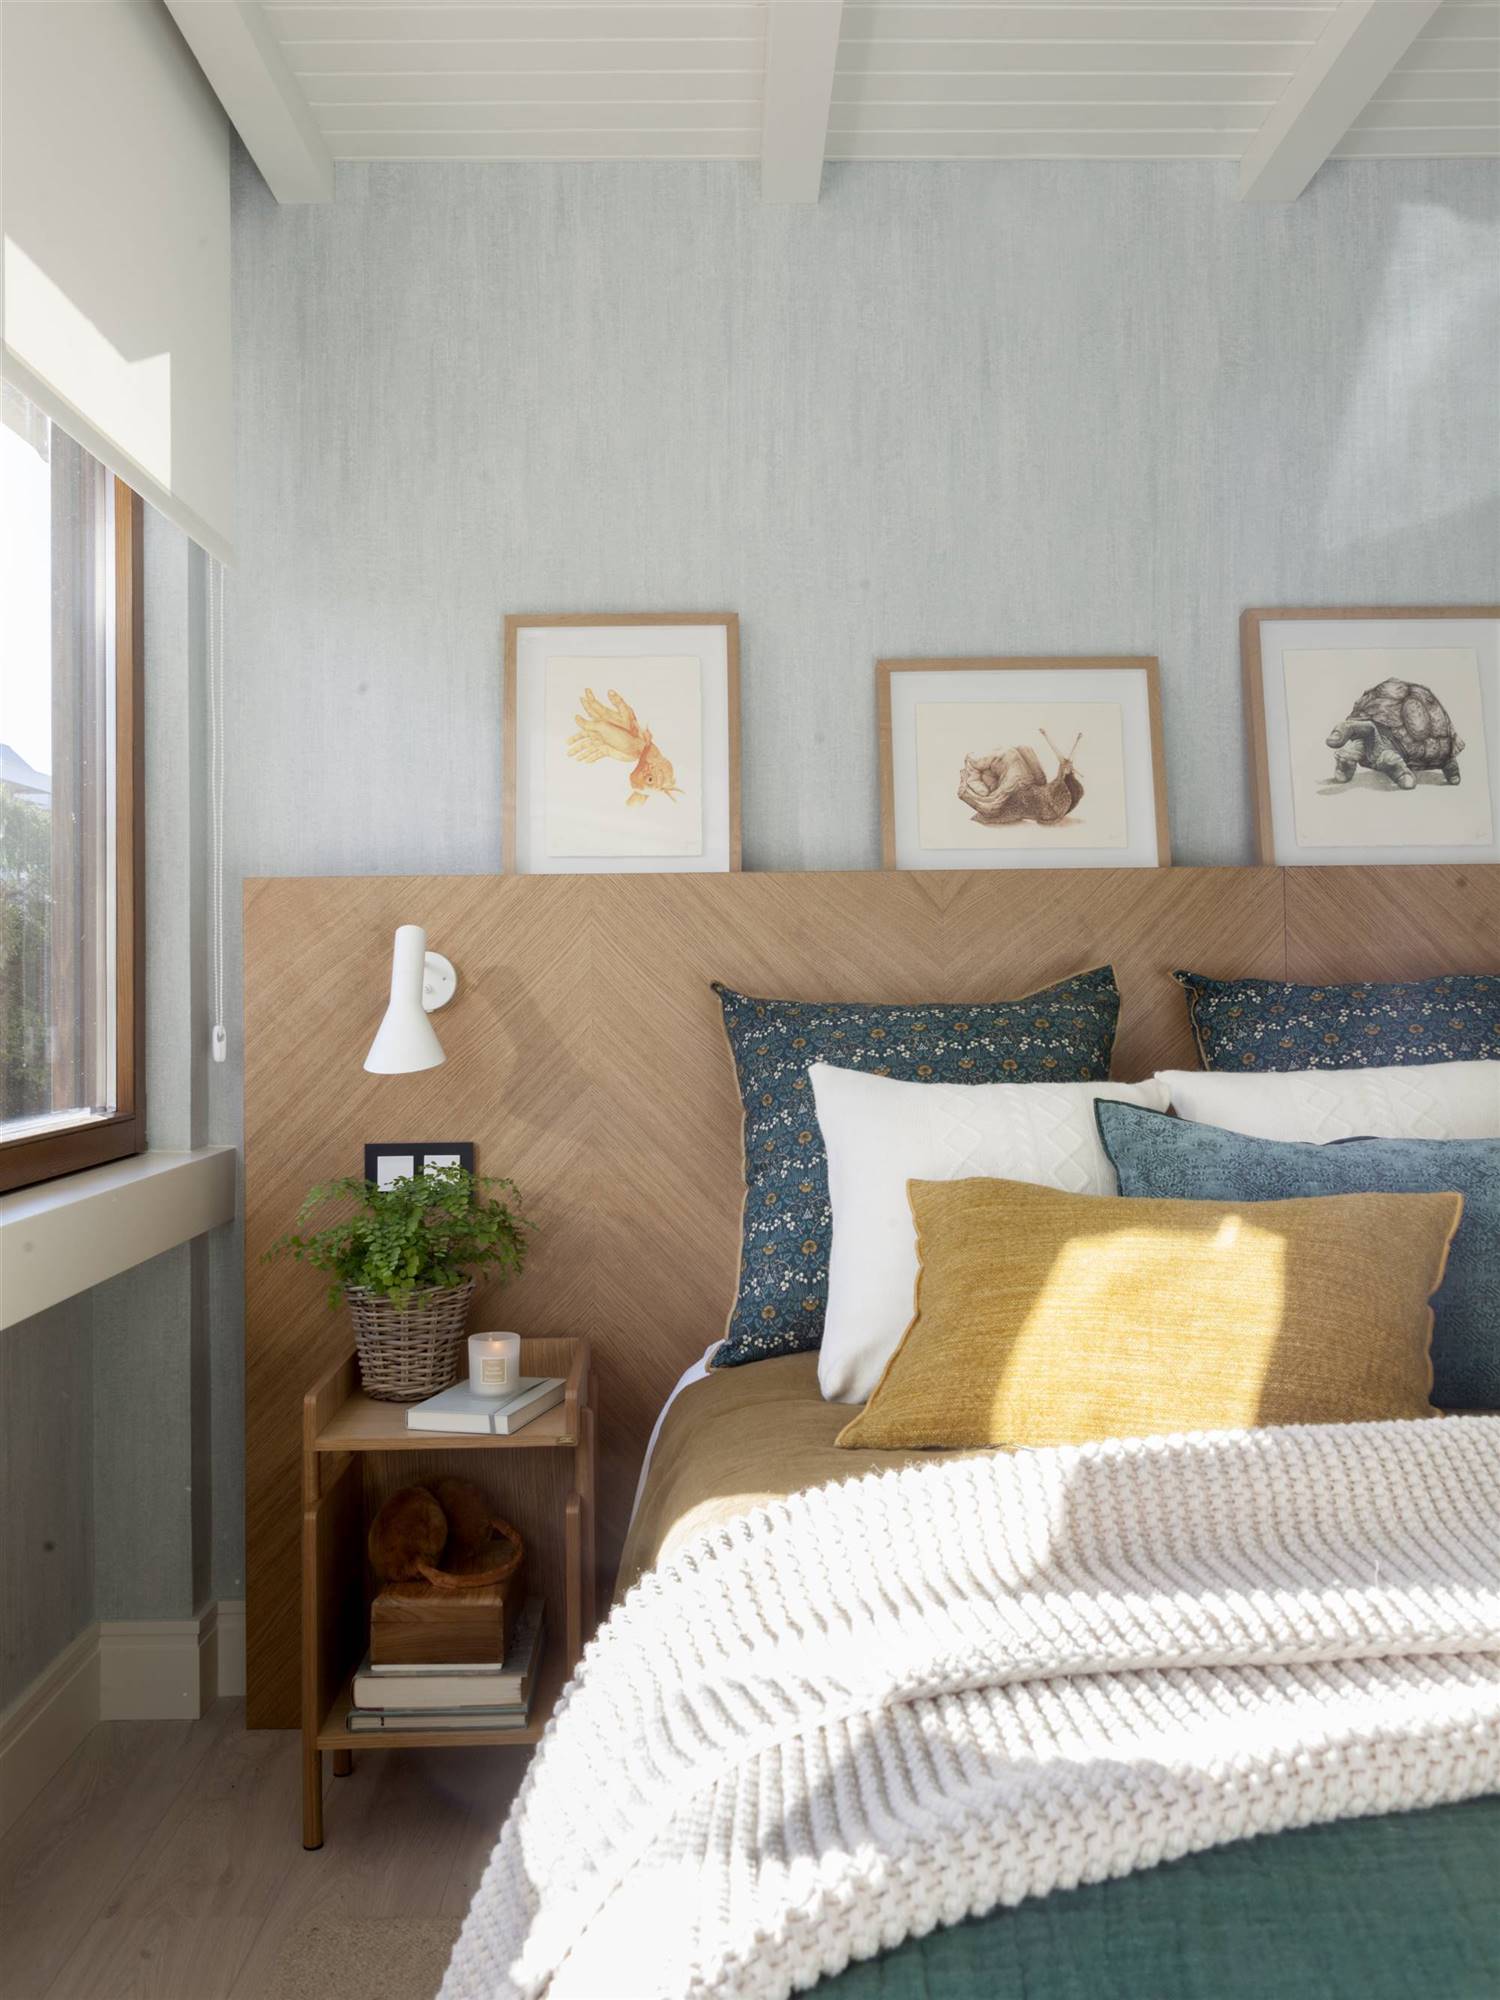 Dormitorio con pared azul y cabecero de madera y tres cuadros apoyados_00522726